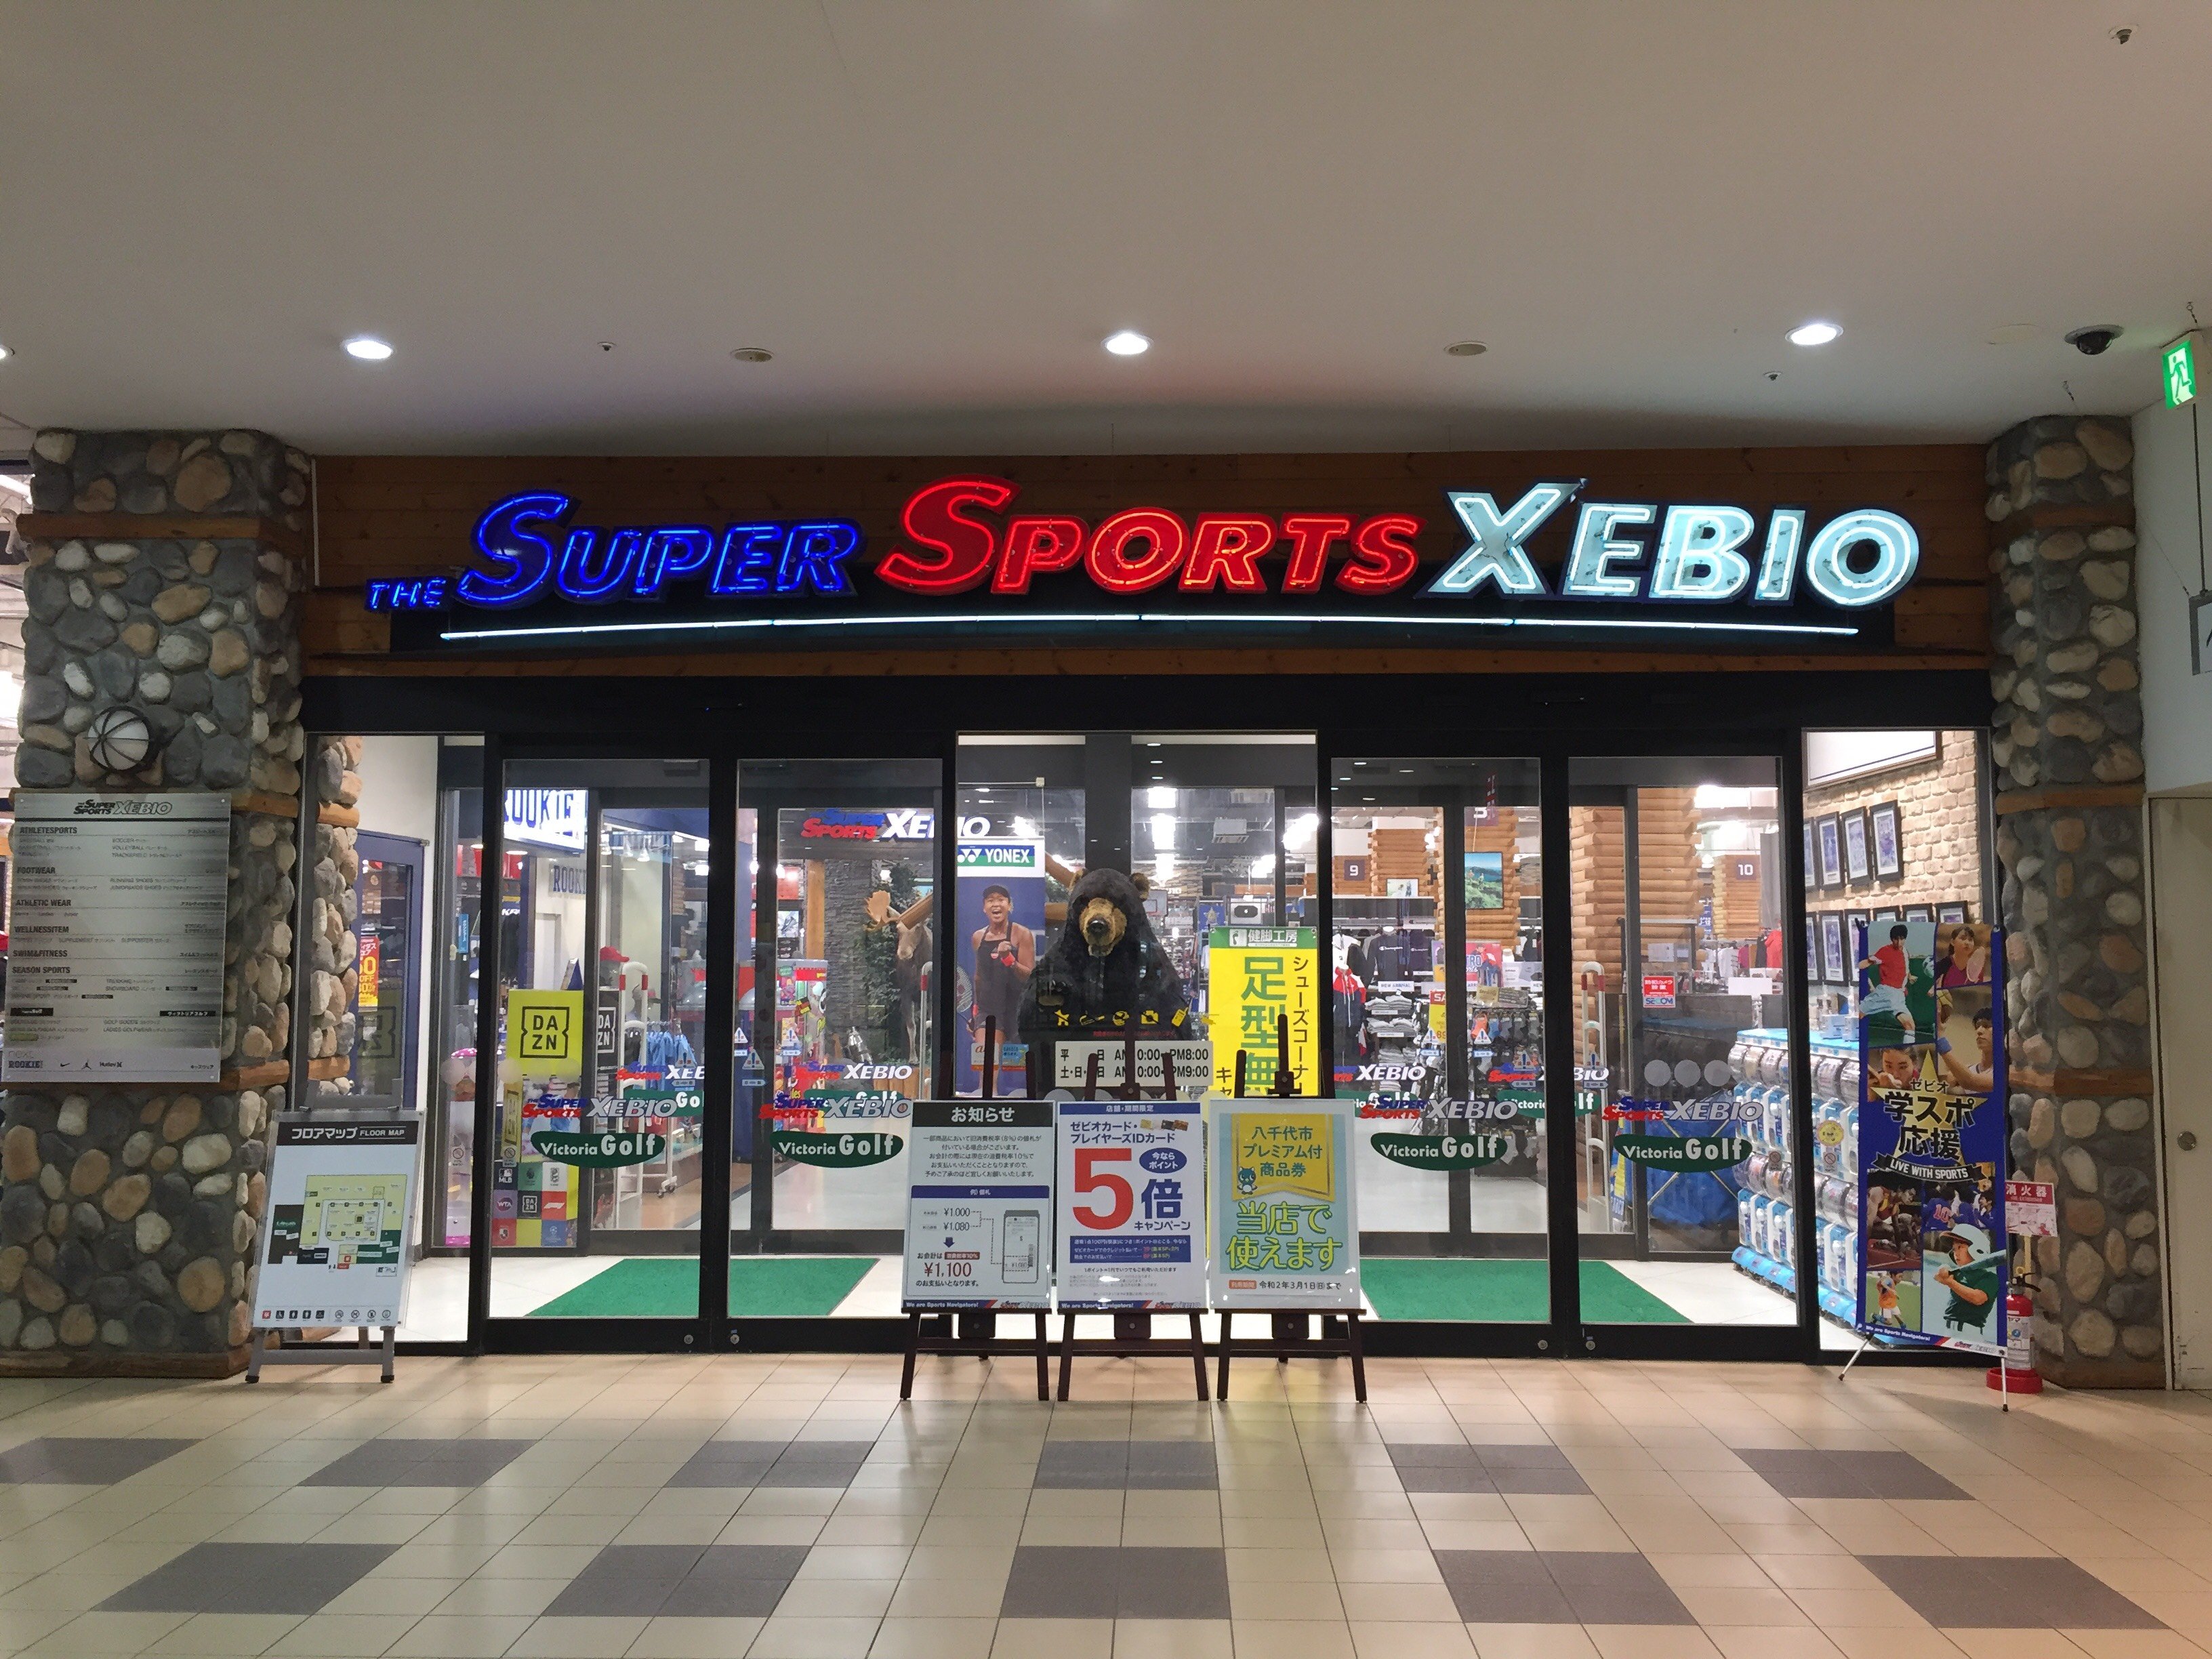 スーパースポーツゼビオ フルルガーデン八千代店 千葉県 八千代市 Super Sports Xebio スーパースポーツゼビオ ゼビオスポーツ オフィシャルサイト